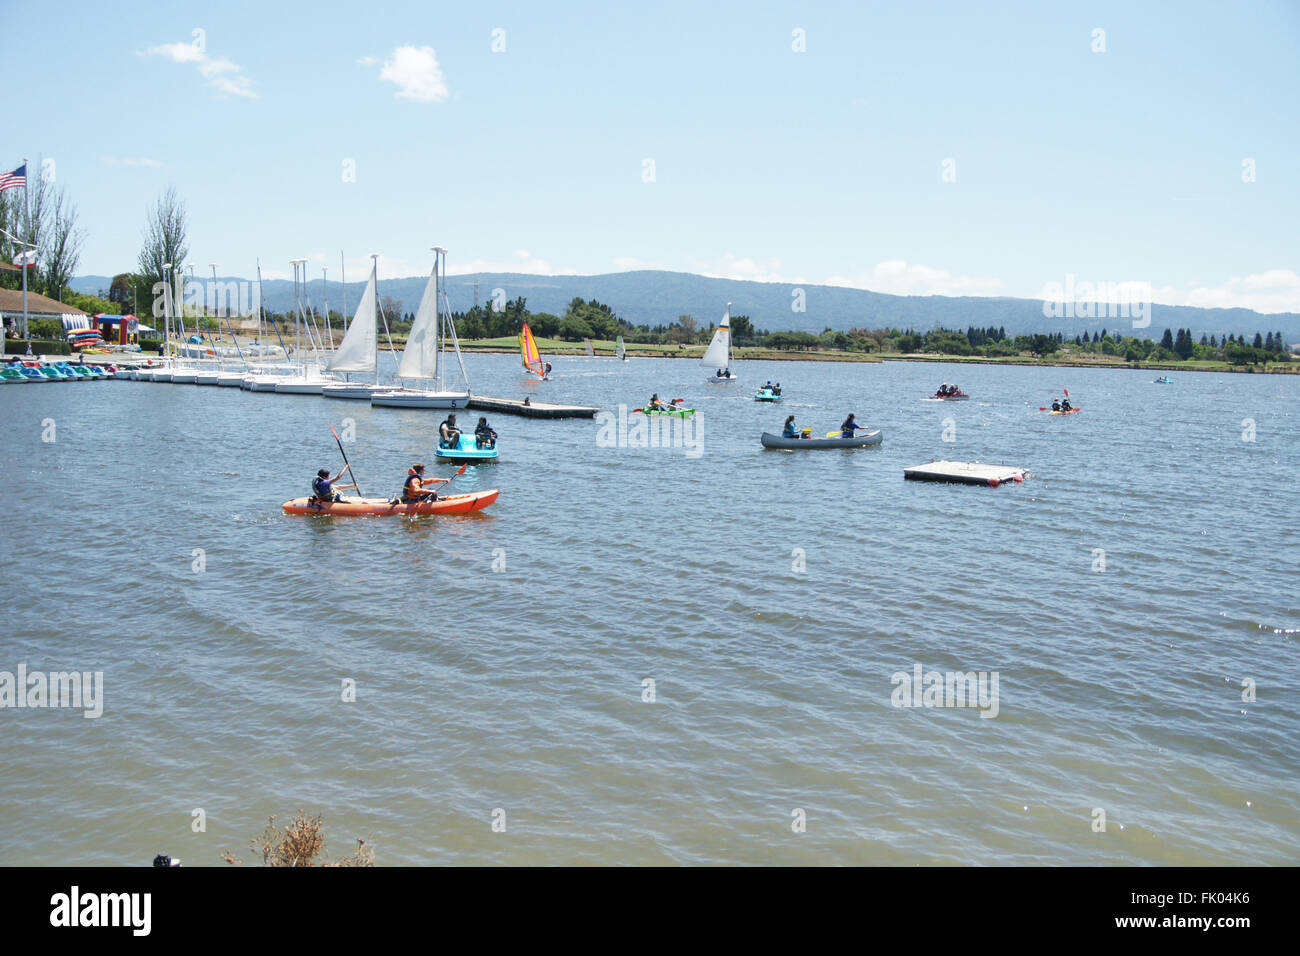 Shoreline Park Lake, Mountain View, Californie, USA, destination populaire pour les résidents et visiteurs, installations Banque D'Images